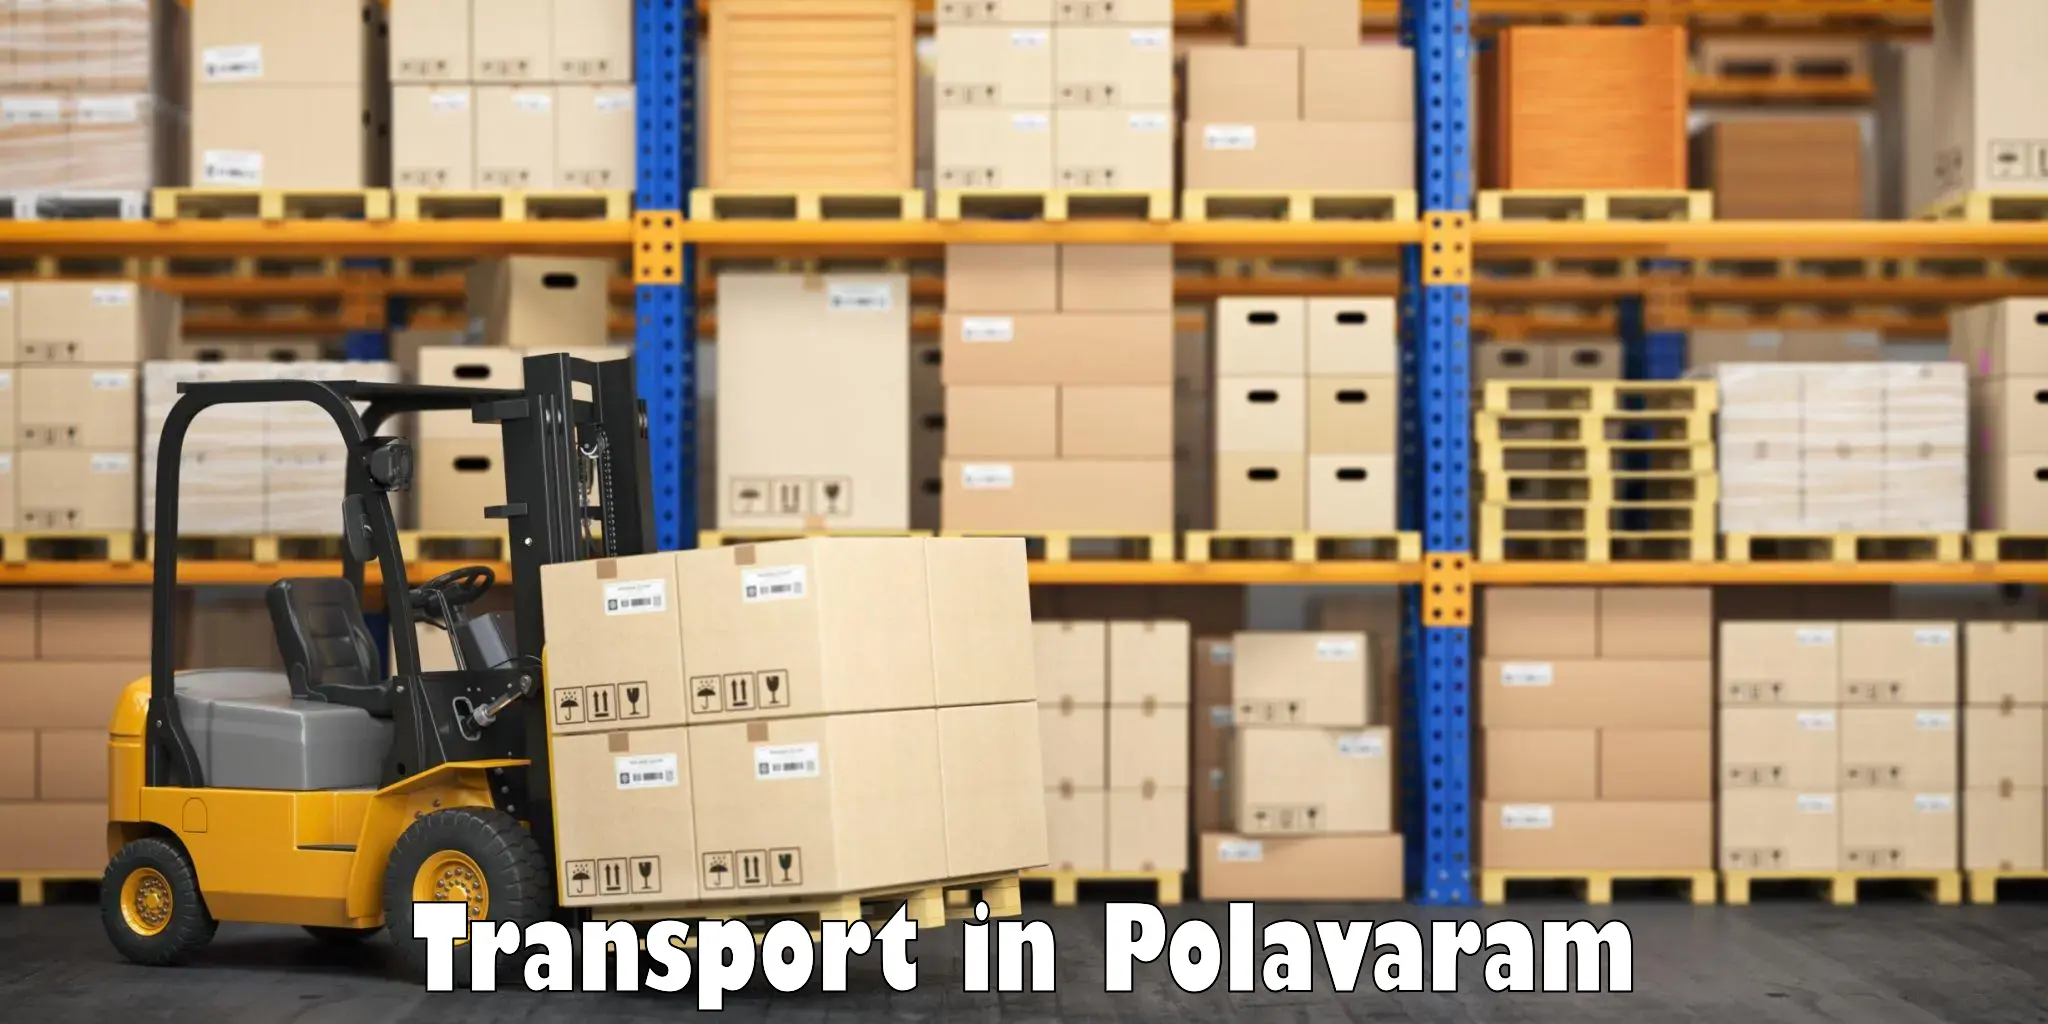 Cargo transport services in Polavaram